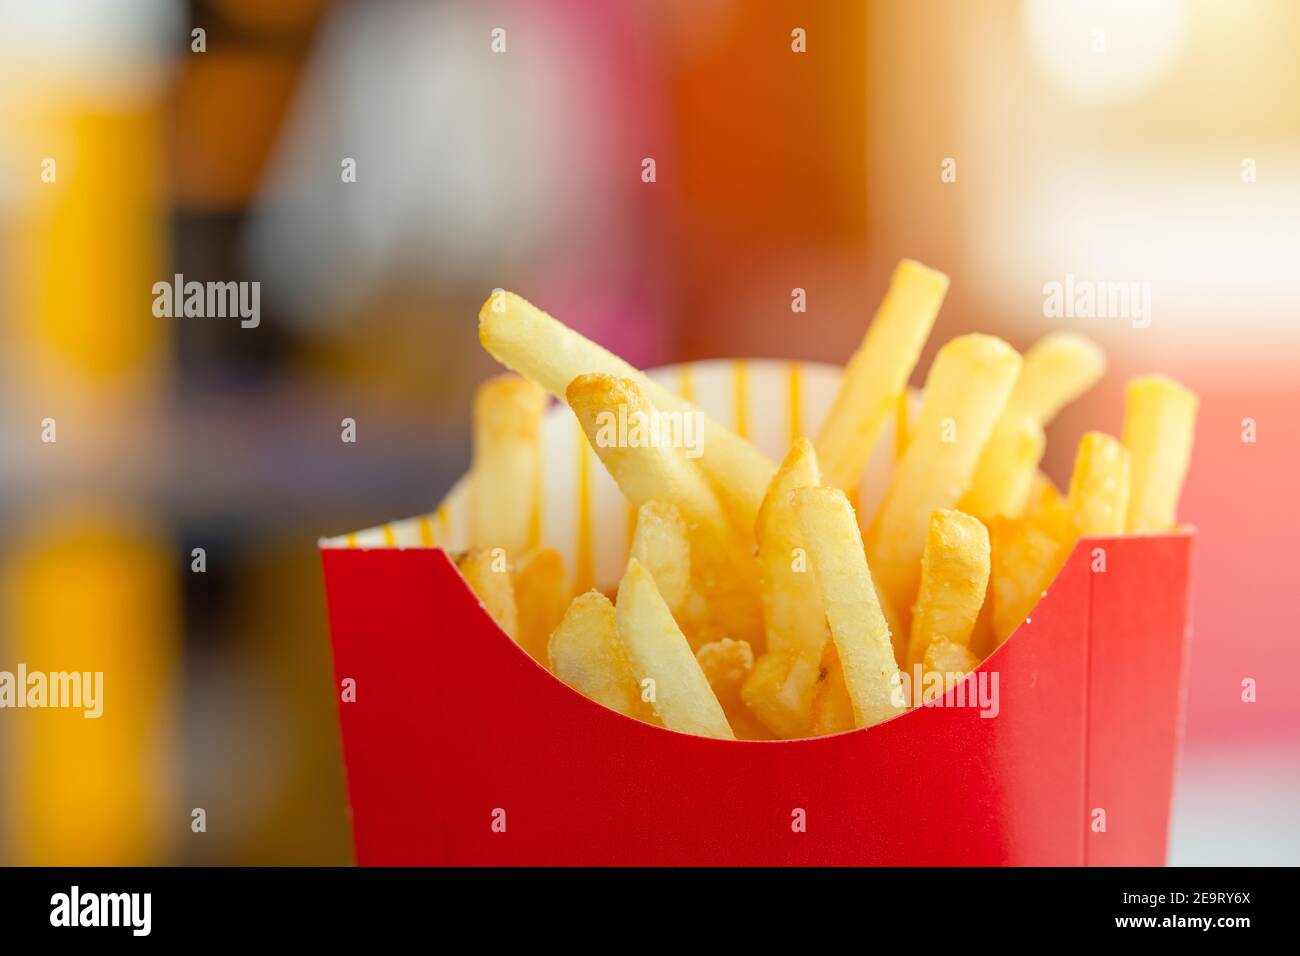 Crosse de pommes de terre ou frites grosses calories gras de glucides Et sel malsain style américain populaire fast food Banque D'Images